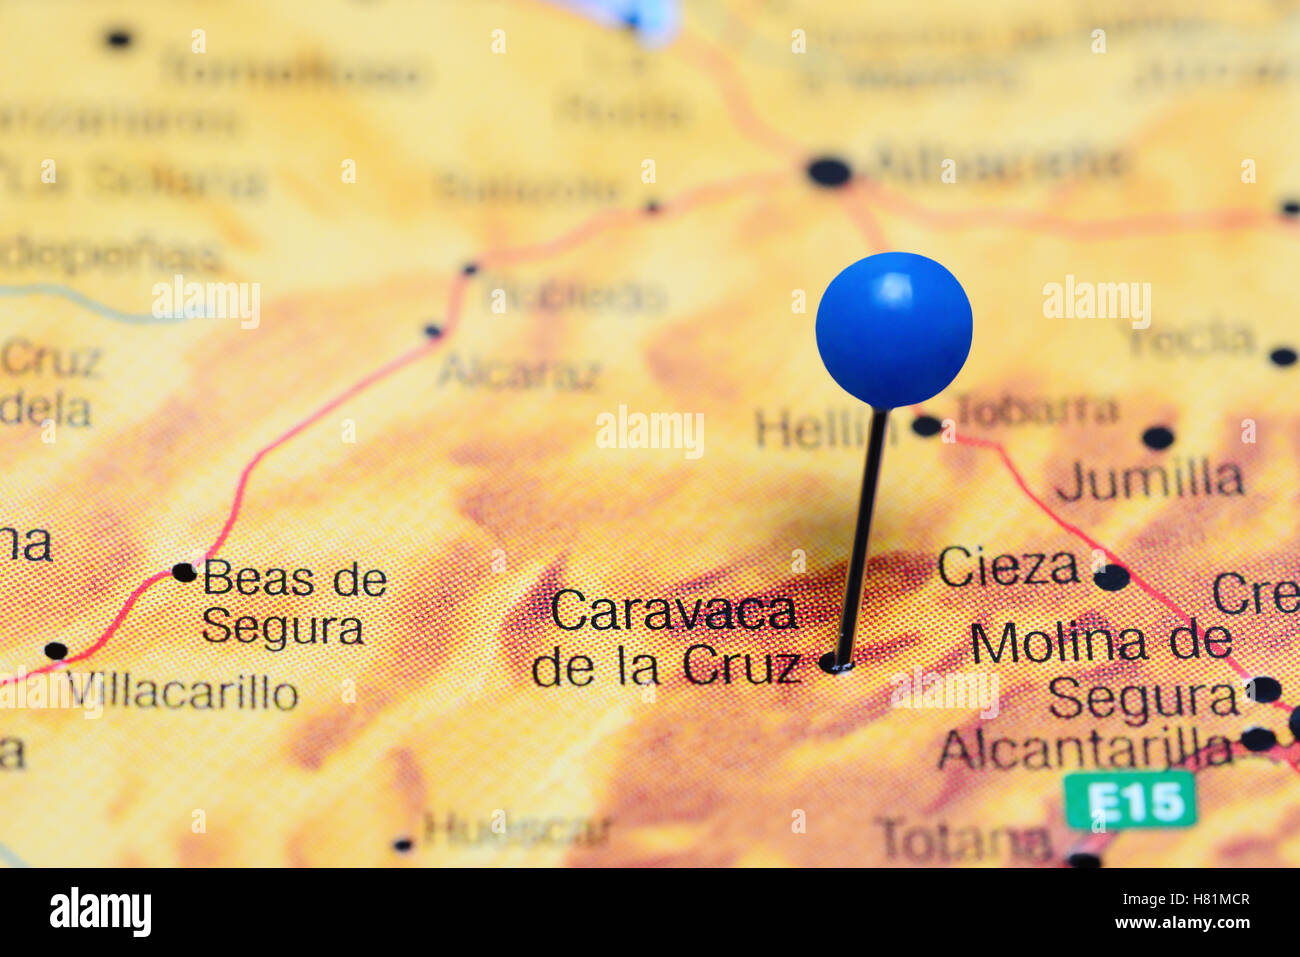 Caravaca de la Cruz épinglée sur une carte de l'Espagne Banque D'Images